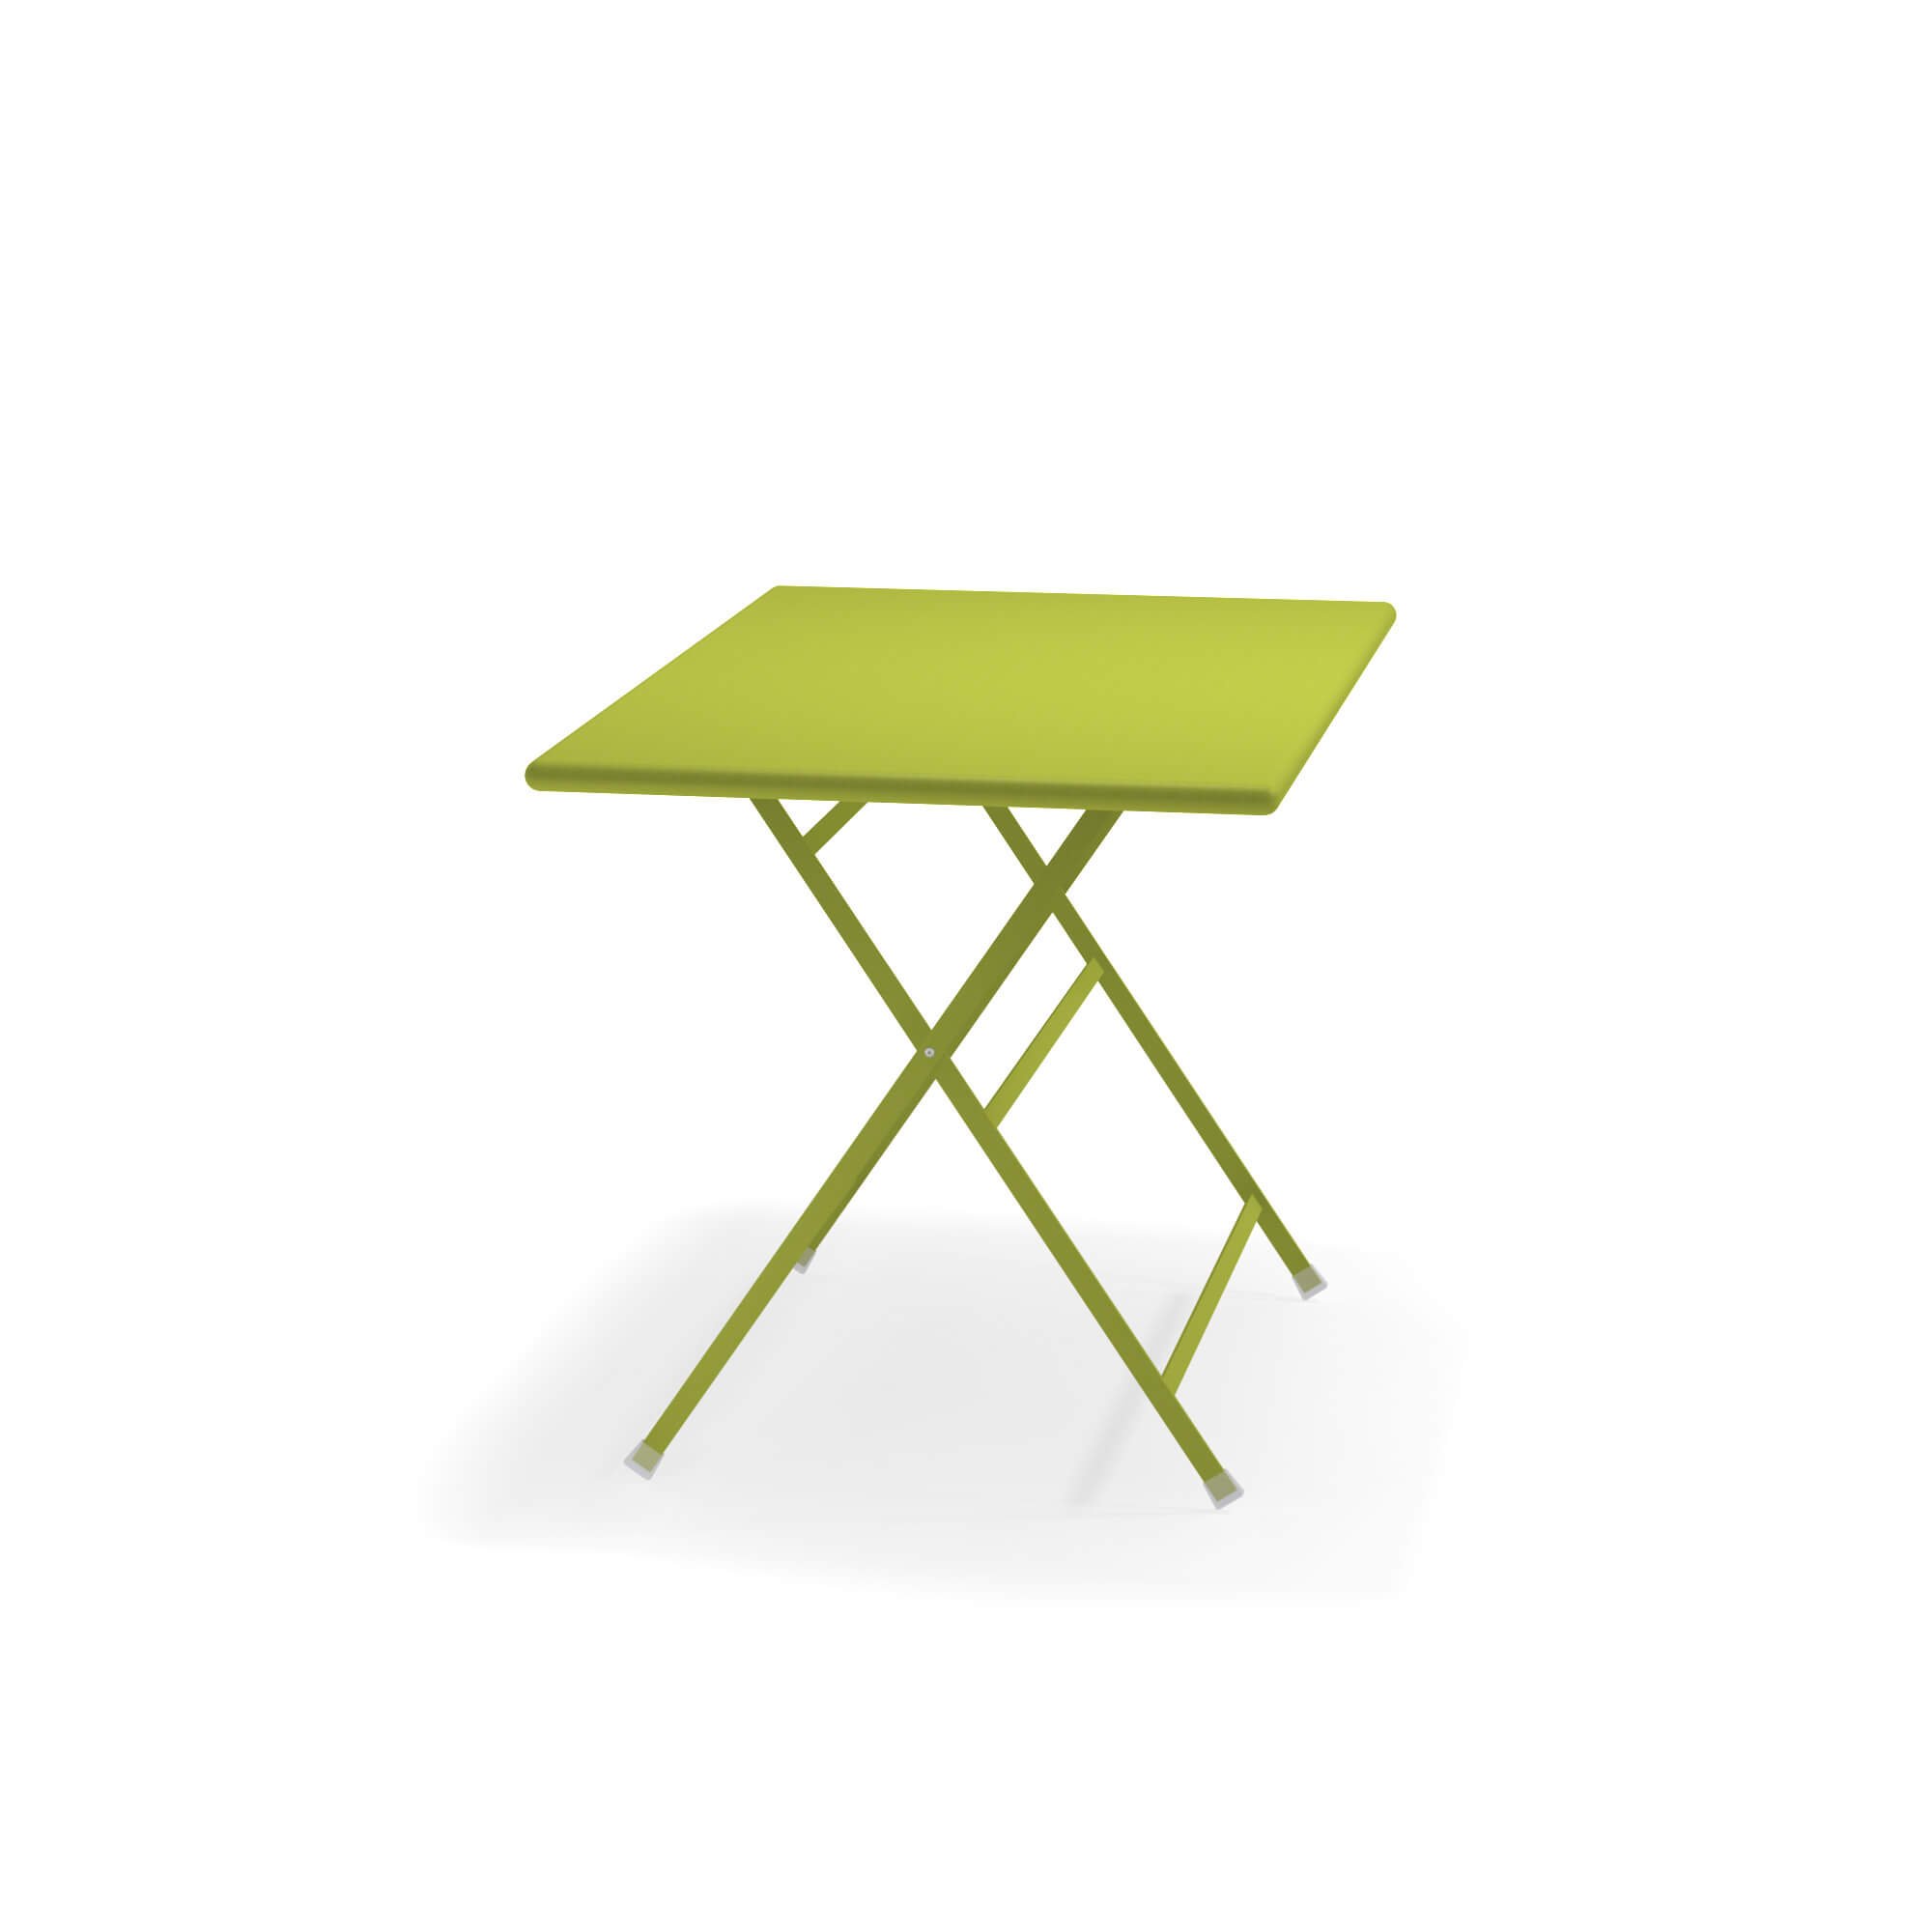 Arc en Ciel Folding Table  from Emu, designed by EMU Design Studio